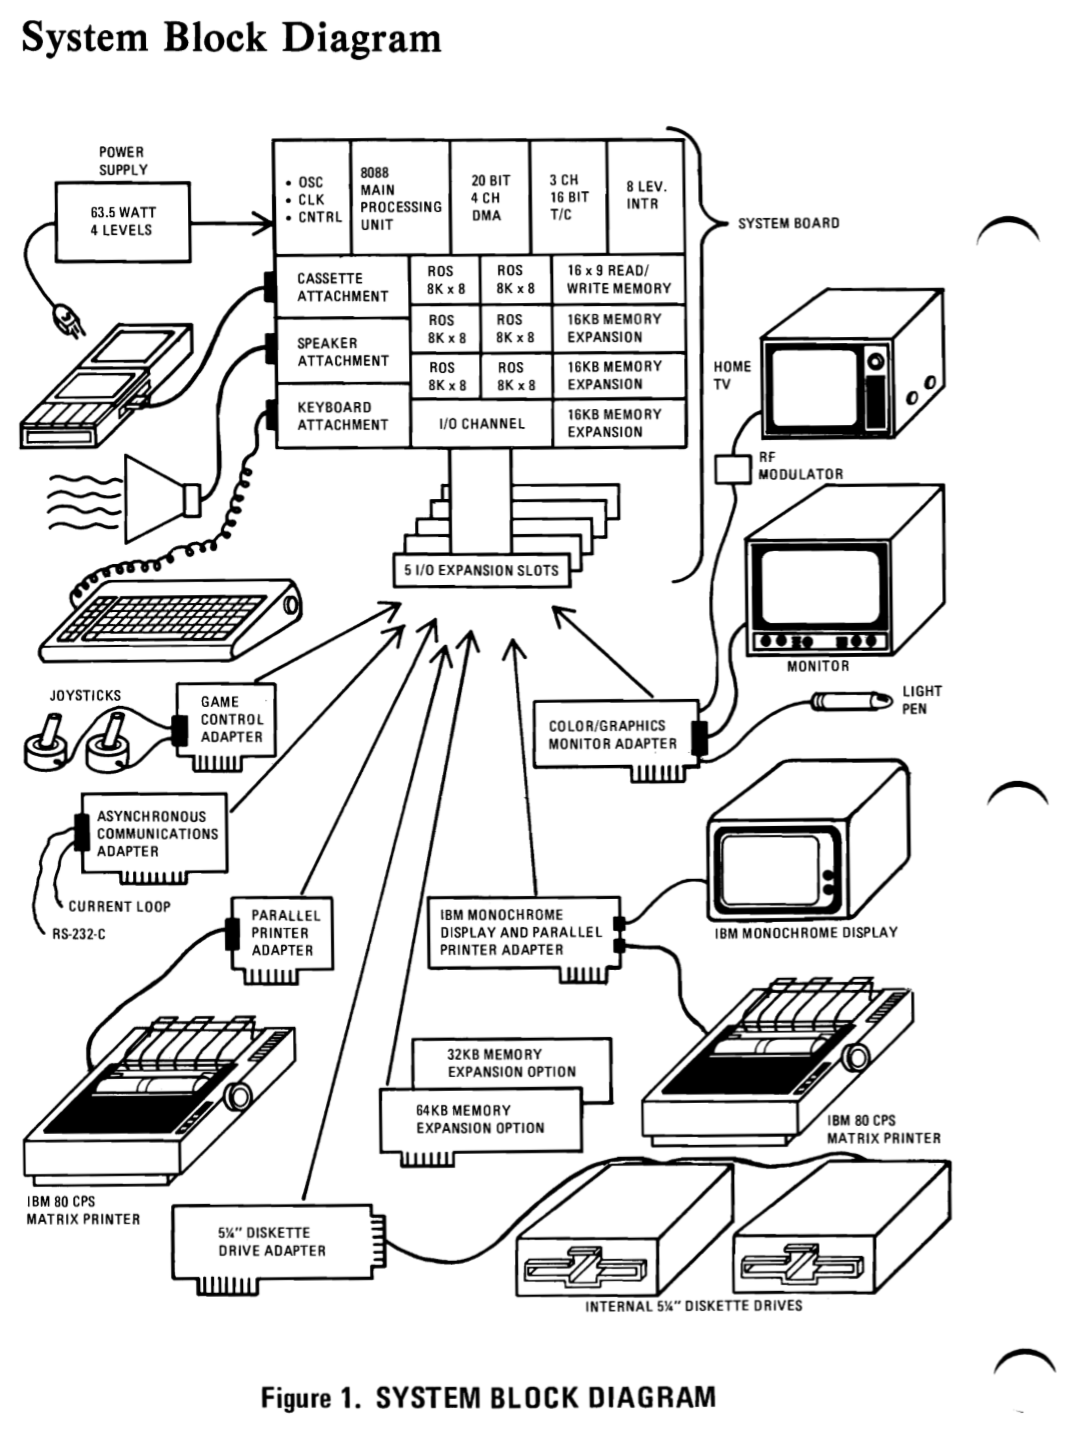 IBM PC block diagram